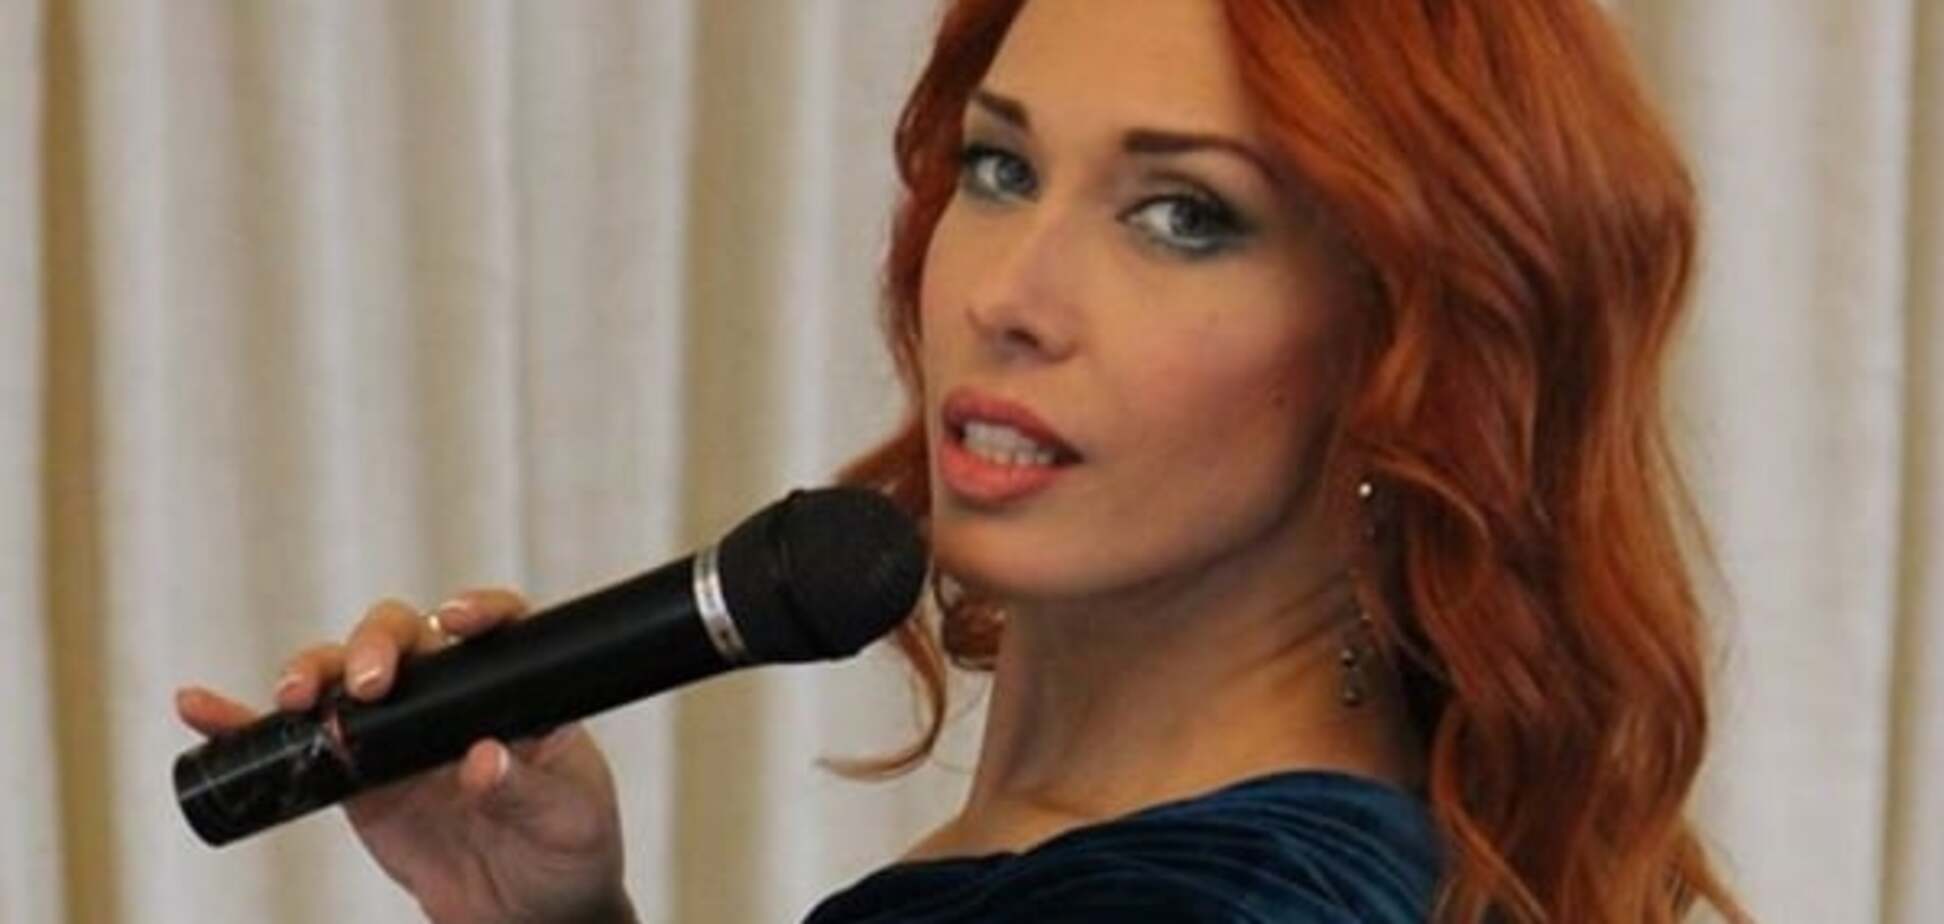 Продолжение скандала: певица ответила журналисту, раскритиковавшему ее выступление во Львове 